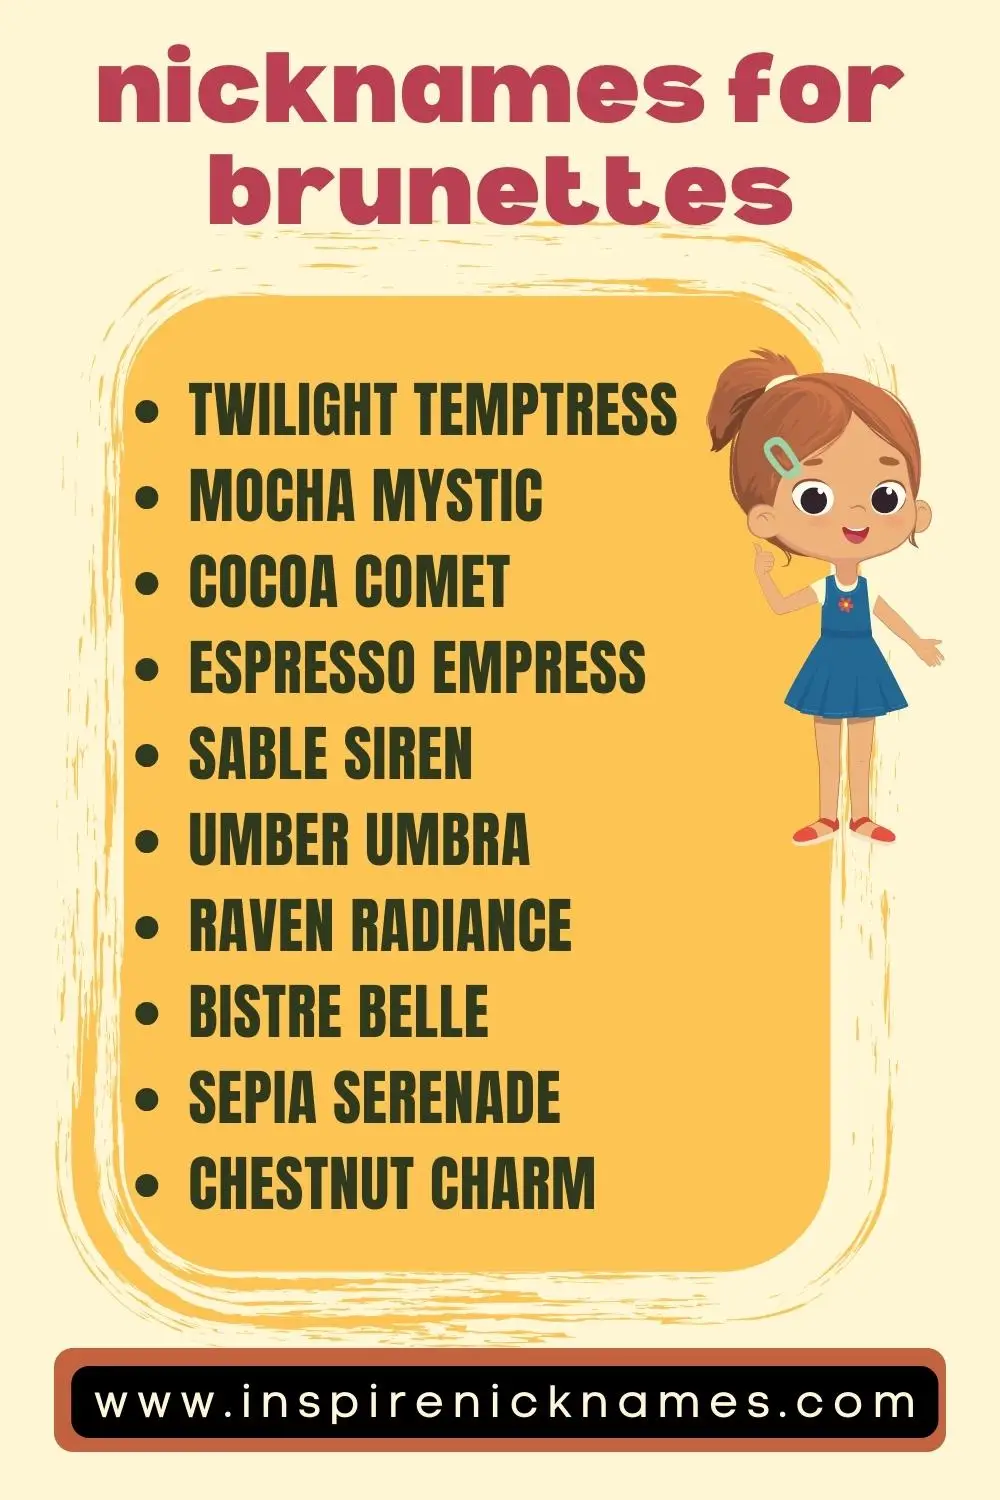 nicknames for brunettes ideas list